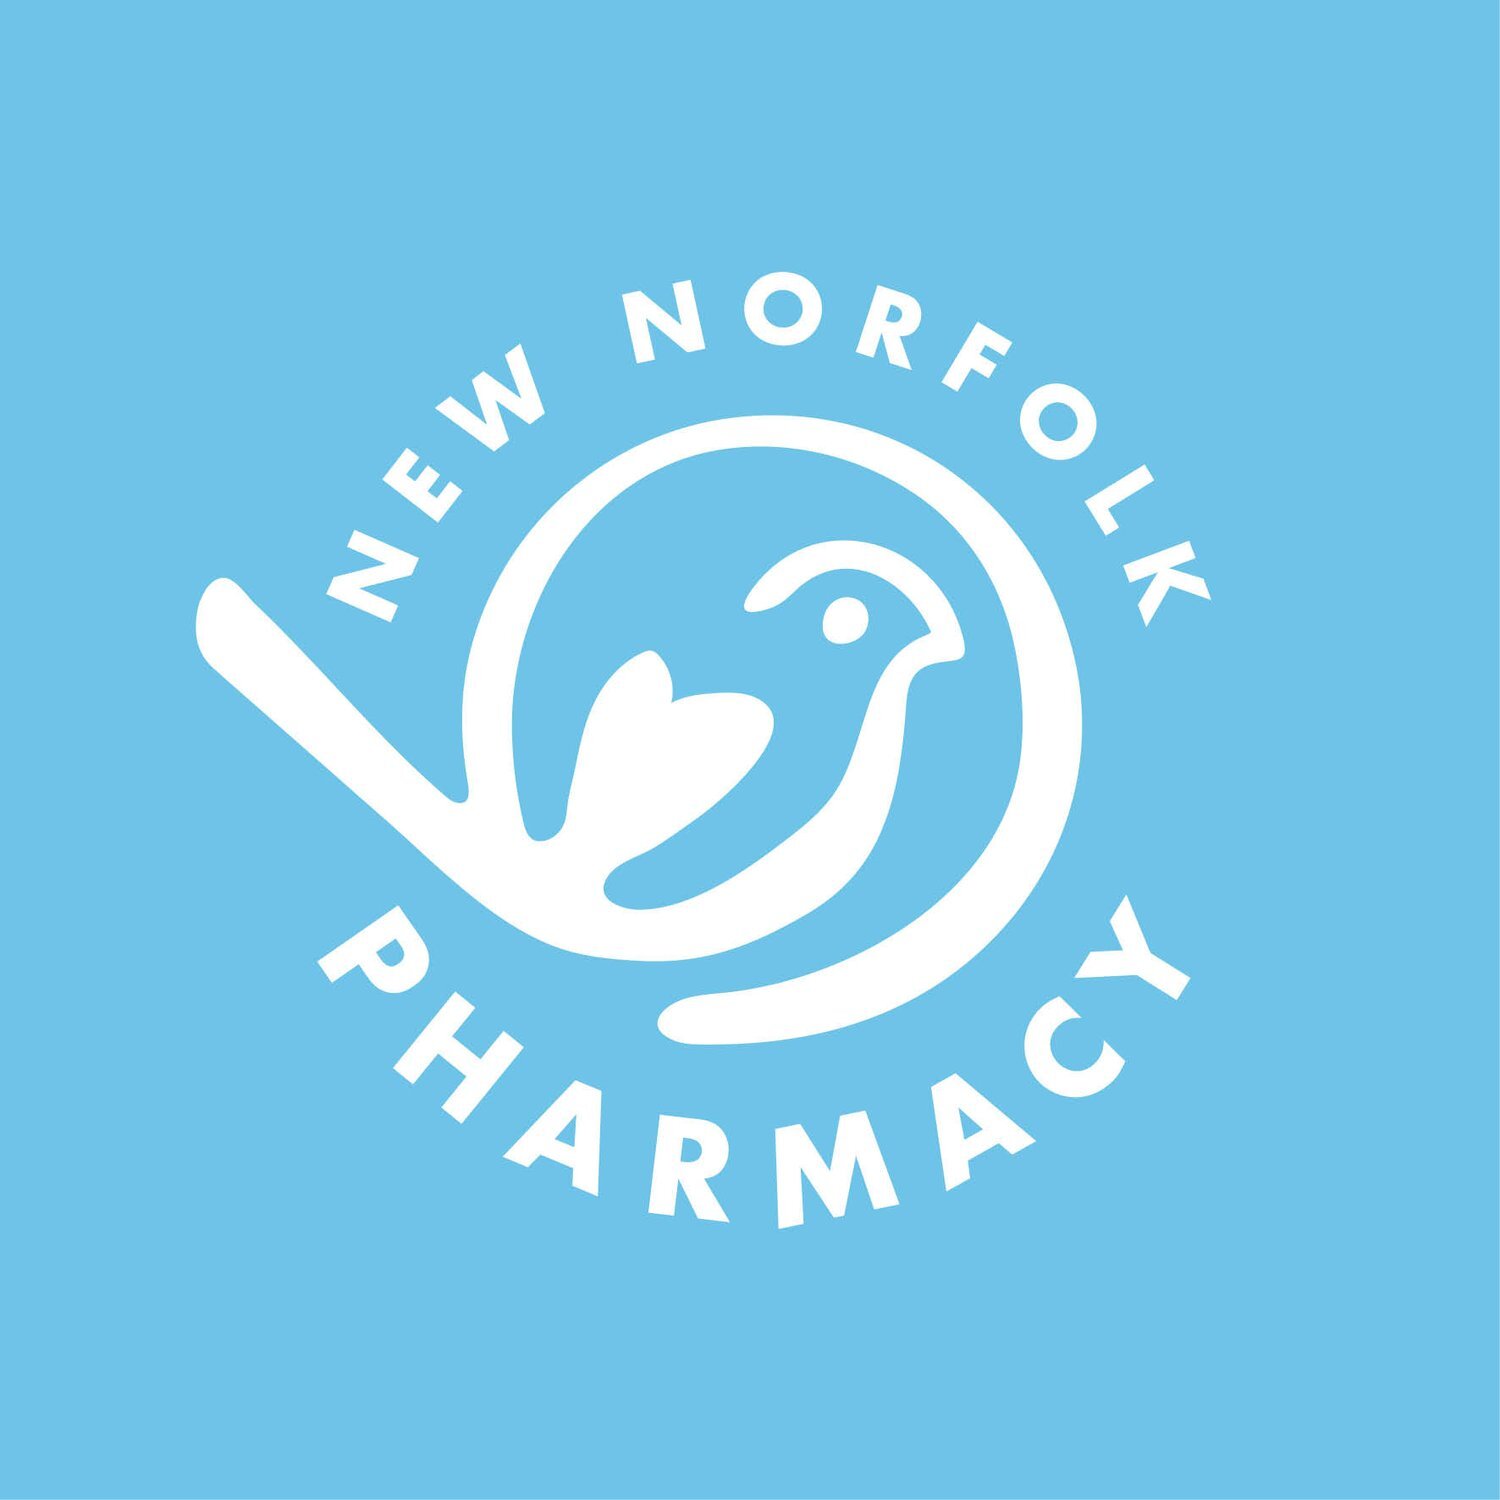 New Norfolk Pharmacy